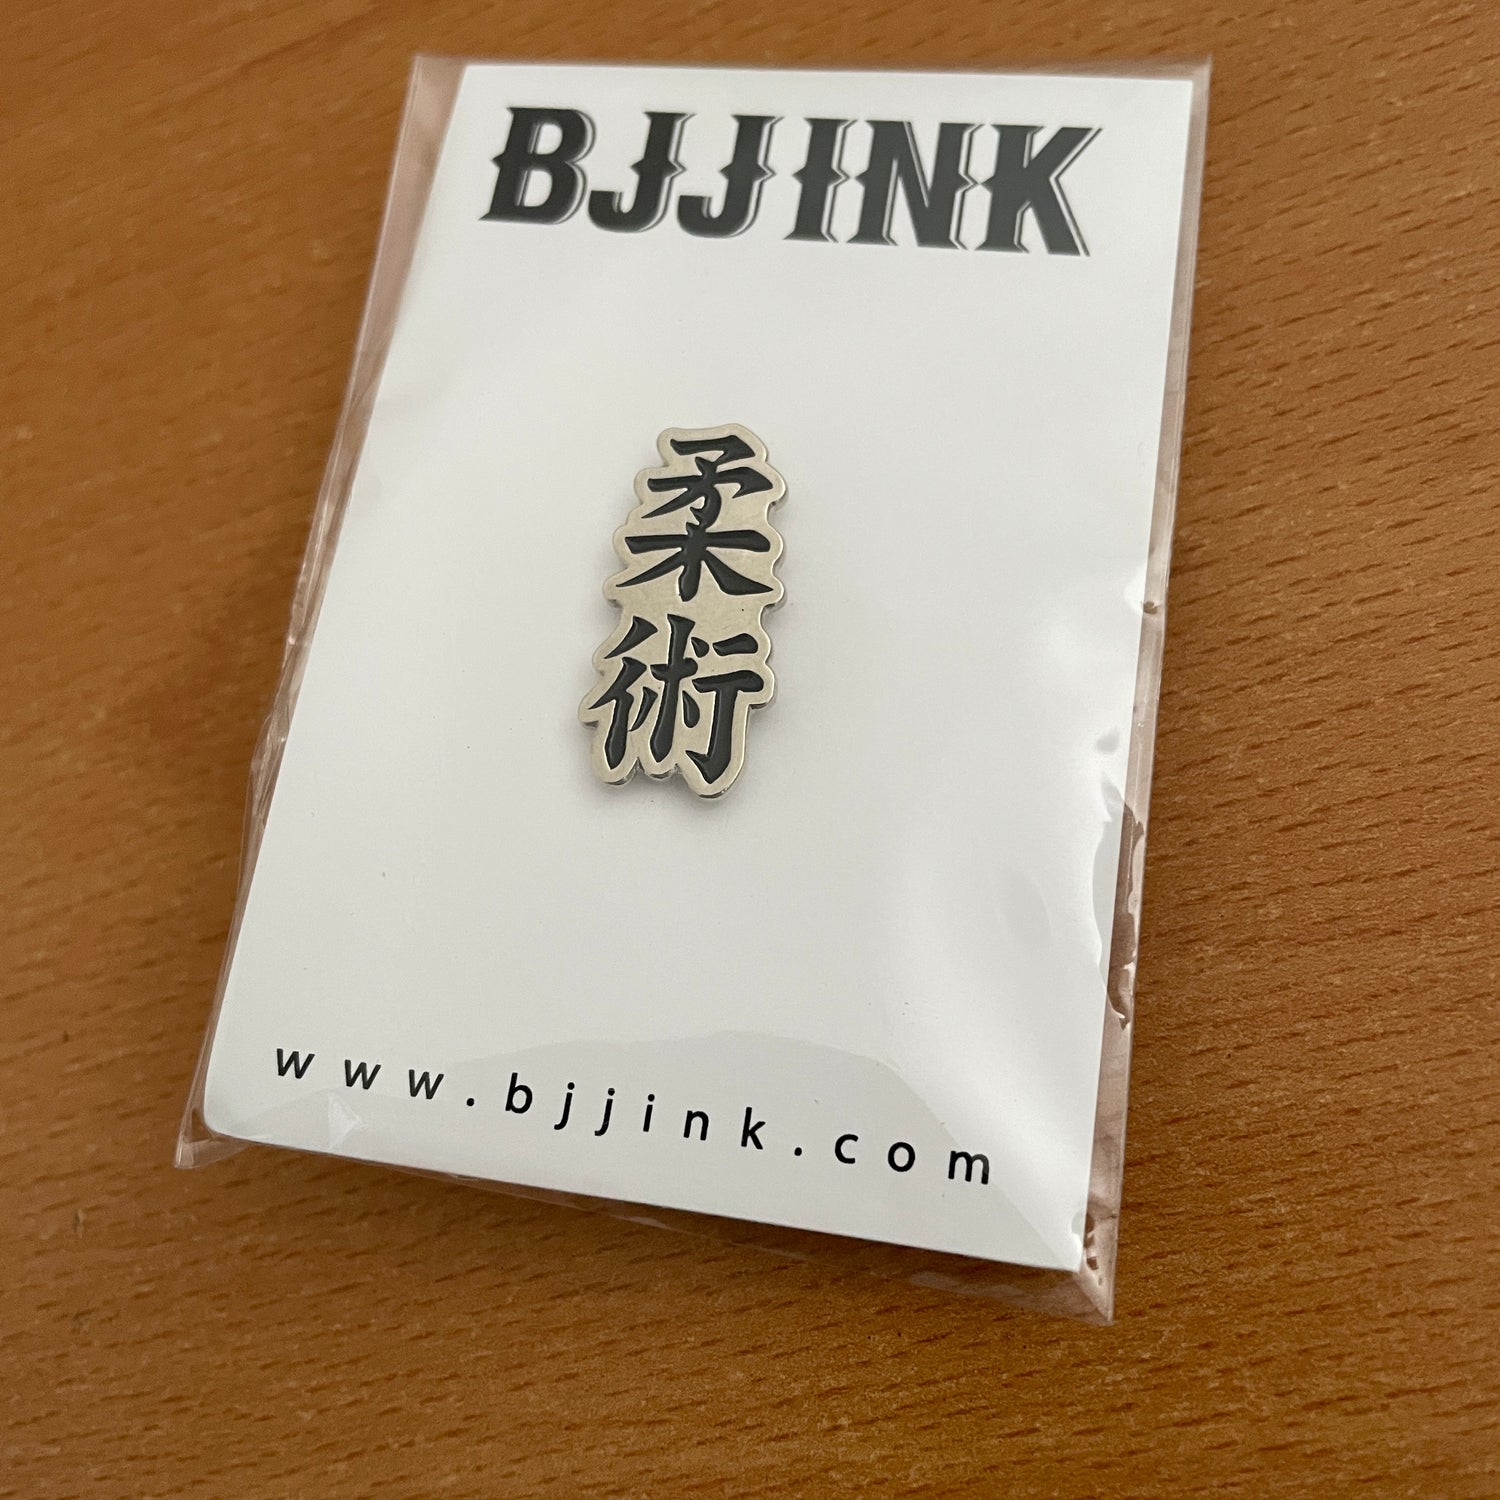 Jiujitsu Kanji Pin by BJJ Ink